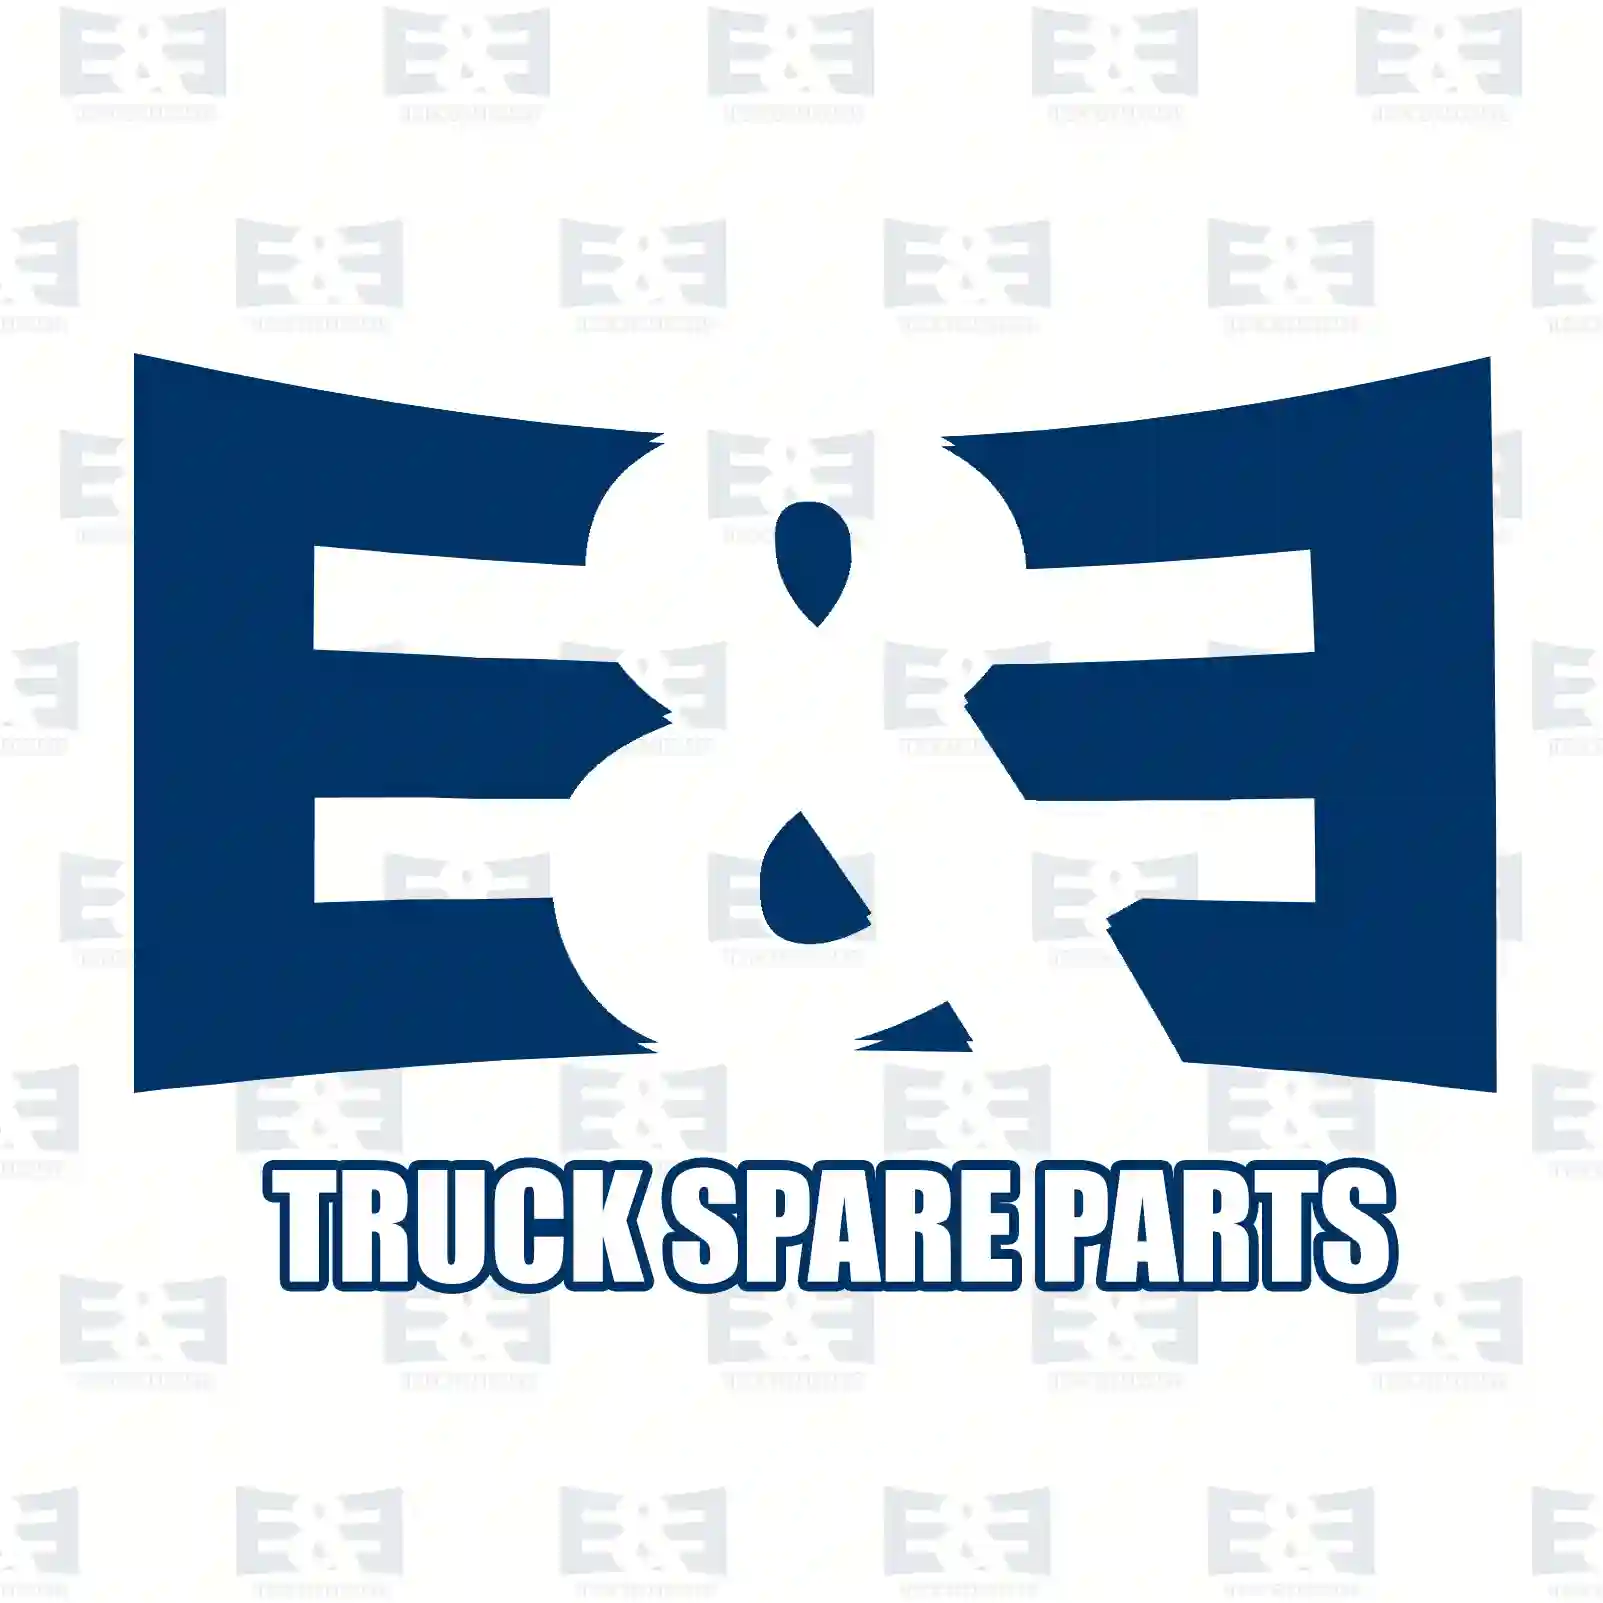 Repair kit, relay valve, 2E2296536, 0802144, 802144, 02968774, 09982371, 2968774, 9982371, 81521166040, 99014360808, A7701004735, 0005865742, 5021170450, 7701004735, 272517 ||  2E2296536 E&E Truck Spare Parts | Truck Spare Parts, Auotomotive Spare Parts Repair kit, relay valve, 2E2296536, 0802144, 802144, 02968774, 09982371, 2968774, 9982371, 81521166040, 99014360808, A7701004735, 0005865742, 5021170450, 7701004735, 272517 ||  2E2296536 E&E Truck Spare Parts | Truck Spare Parts, Auotomotive Spare Parts